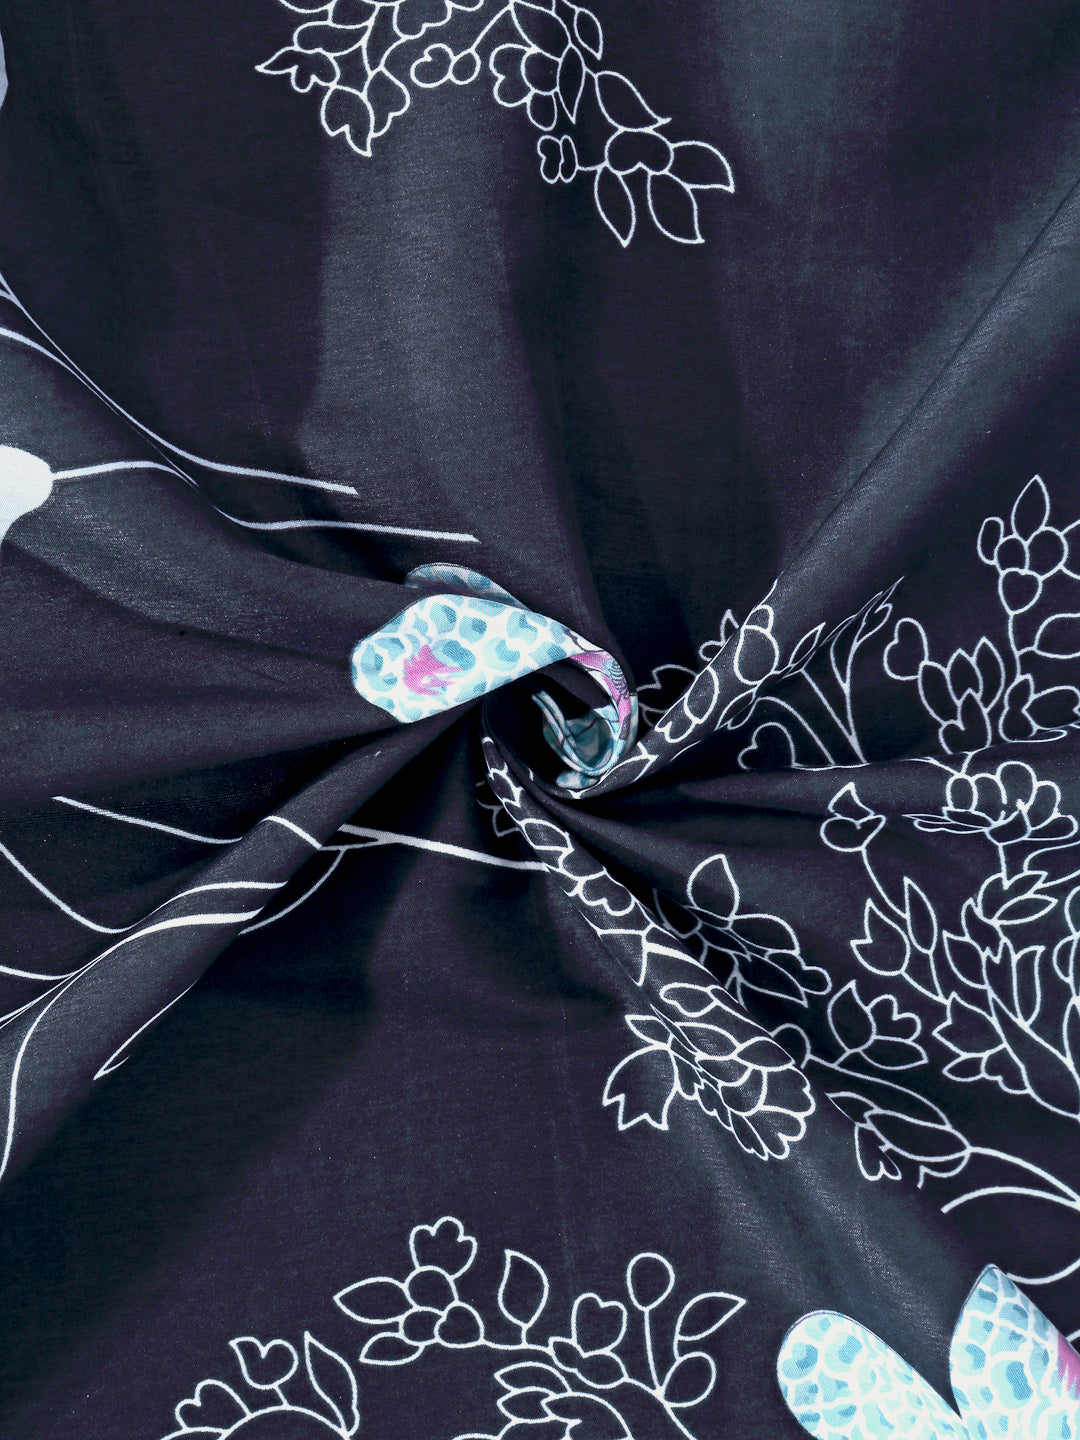 Arrabi Black Floral TC Cotton Blend Single Size Bedsheet with 1 Pillow Cover (220 x 150 cm)